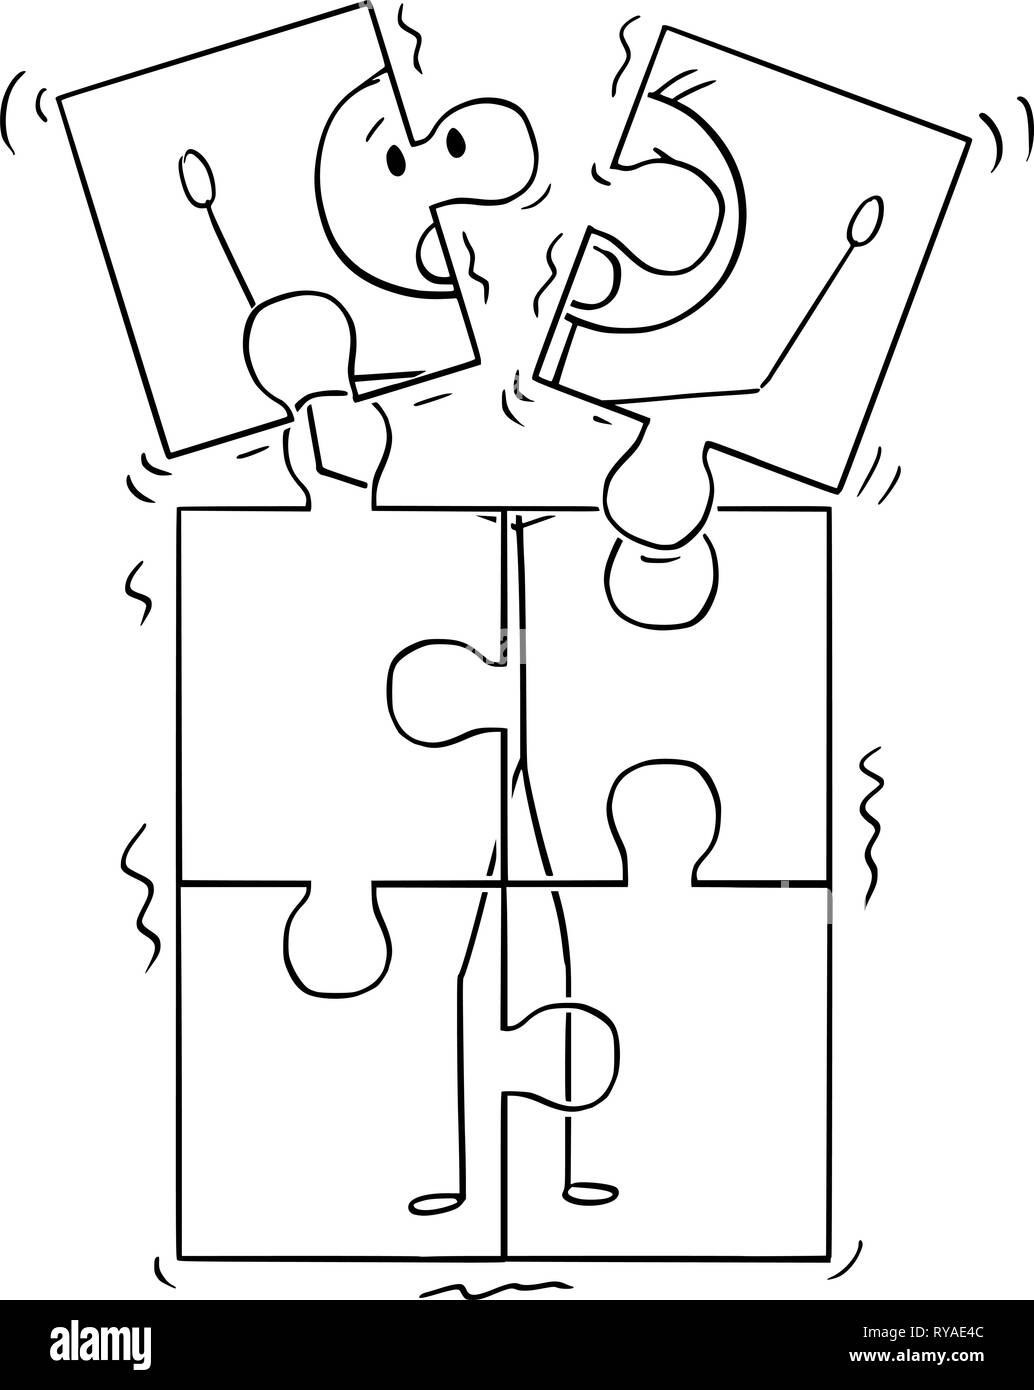 Caricature de l'image de l'homme en courtage Jigsaw Puzzle Pieces Illustration de Vecteur